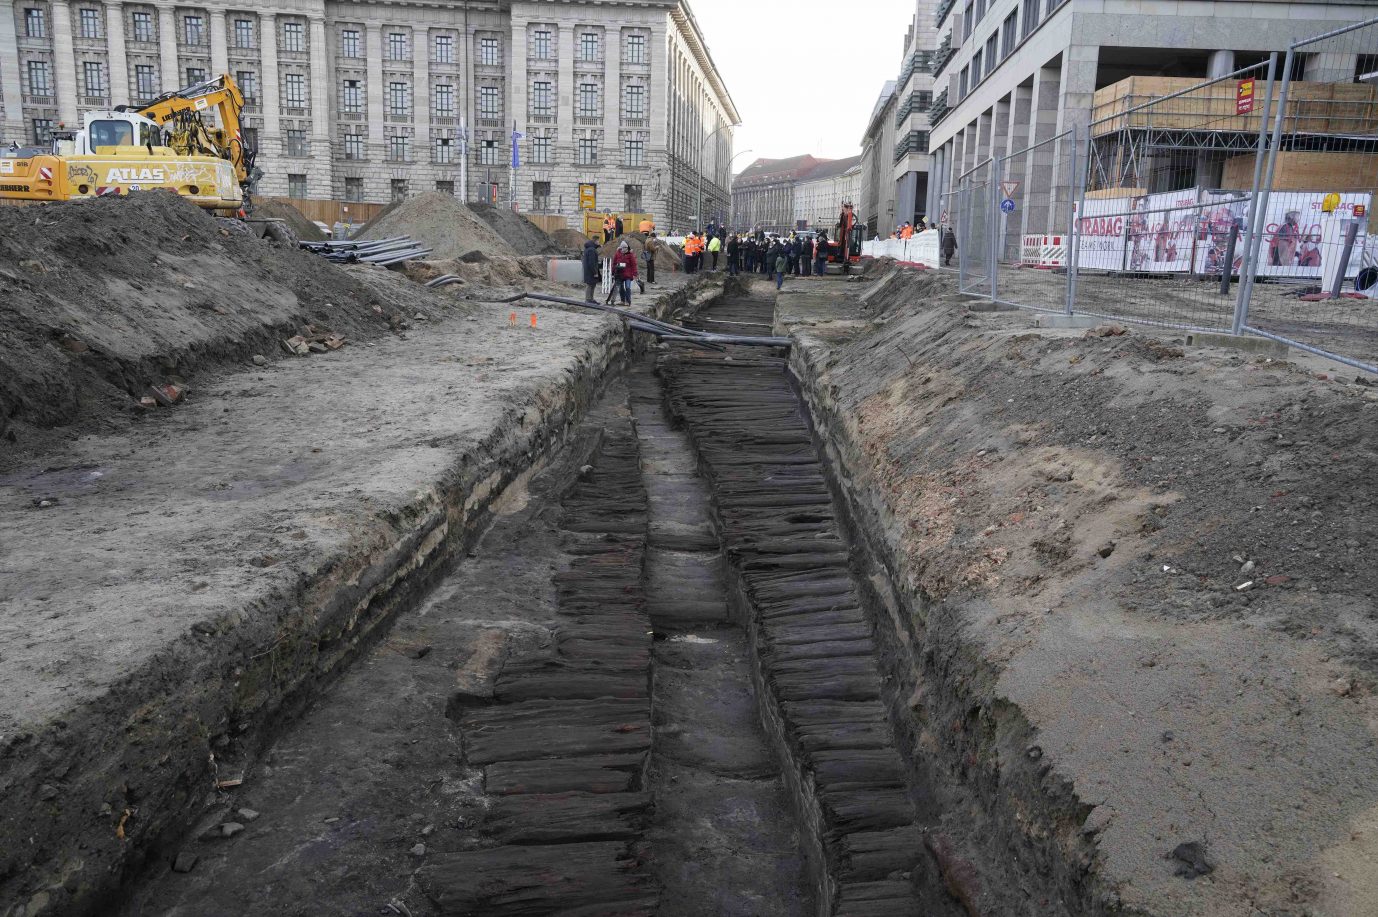 Denkmalschützer kritisieren die Stadt Berlin dafür, eine 800 Jahre alte Straße zerstört zu haben Foto: picture alliance / Geisler-Fotopress | Thomas Bartilla/Geisler-Fotopres